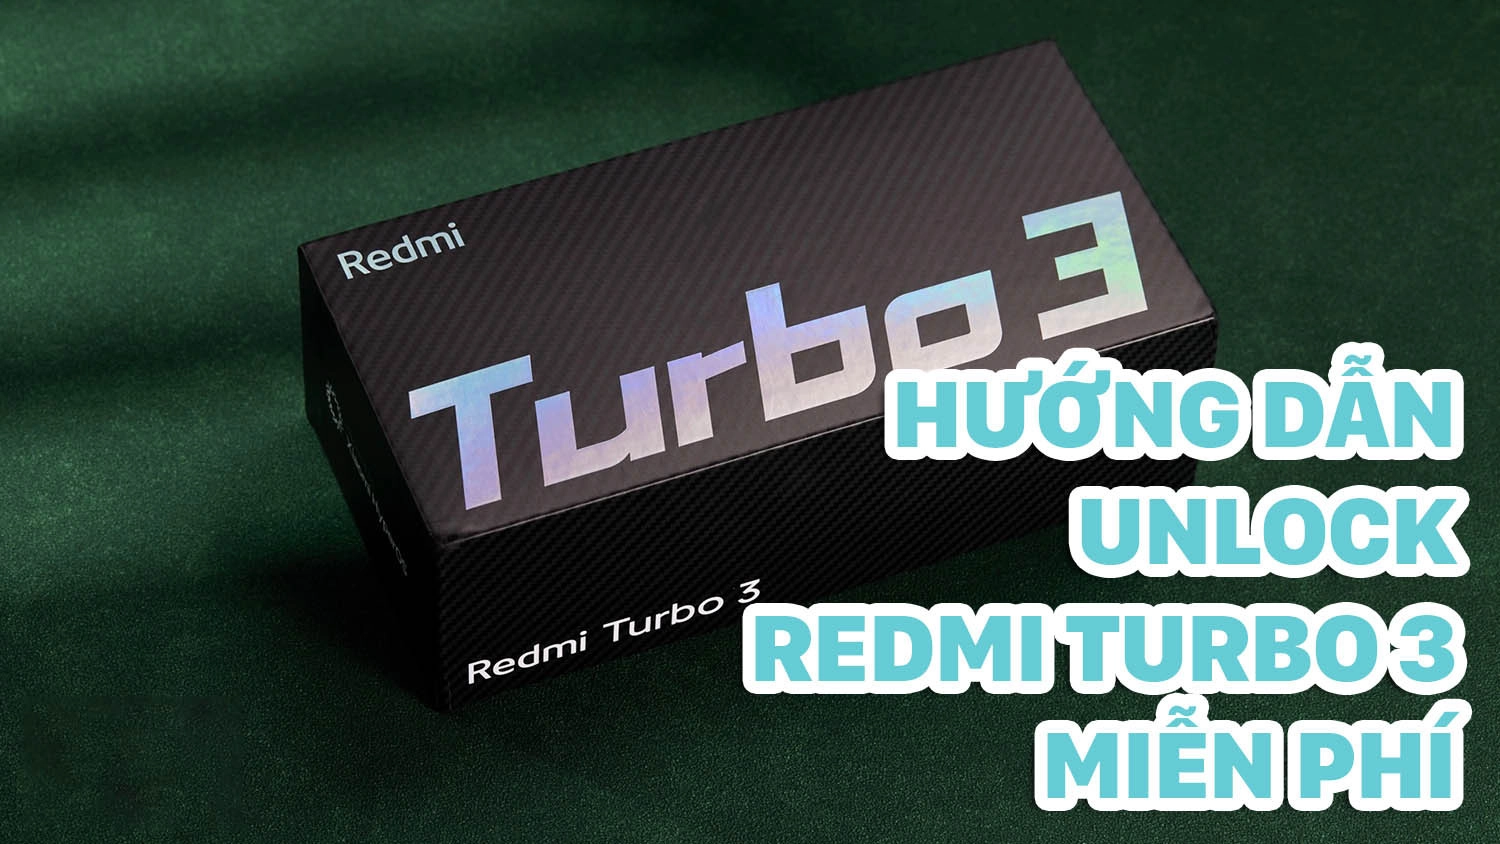 Hướng dẫn cách xin quyền unlock Redmi Turbo 3 miễn phí, siêu nhanh